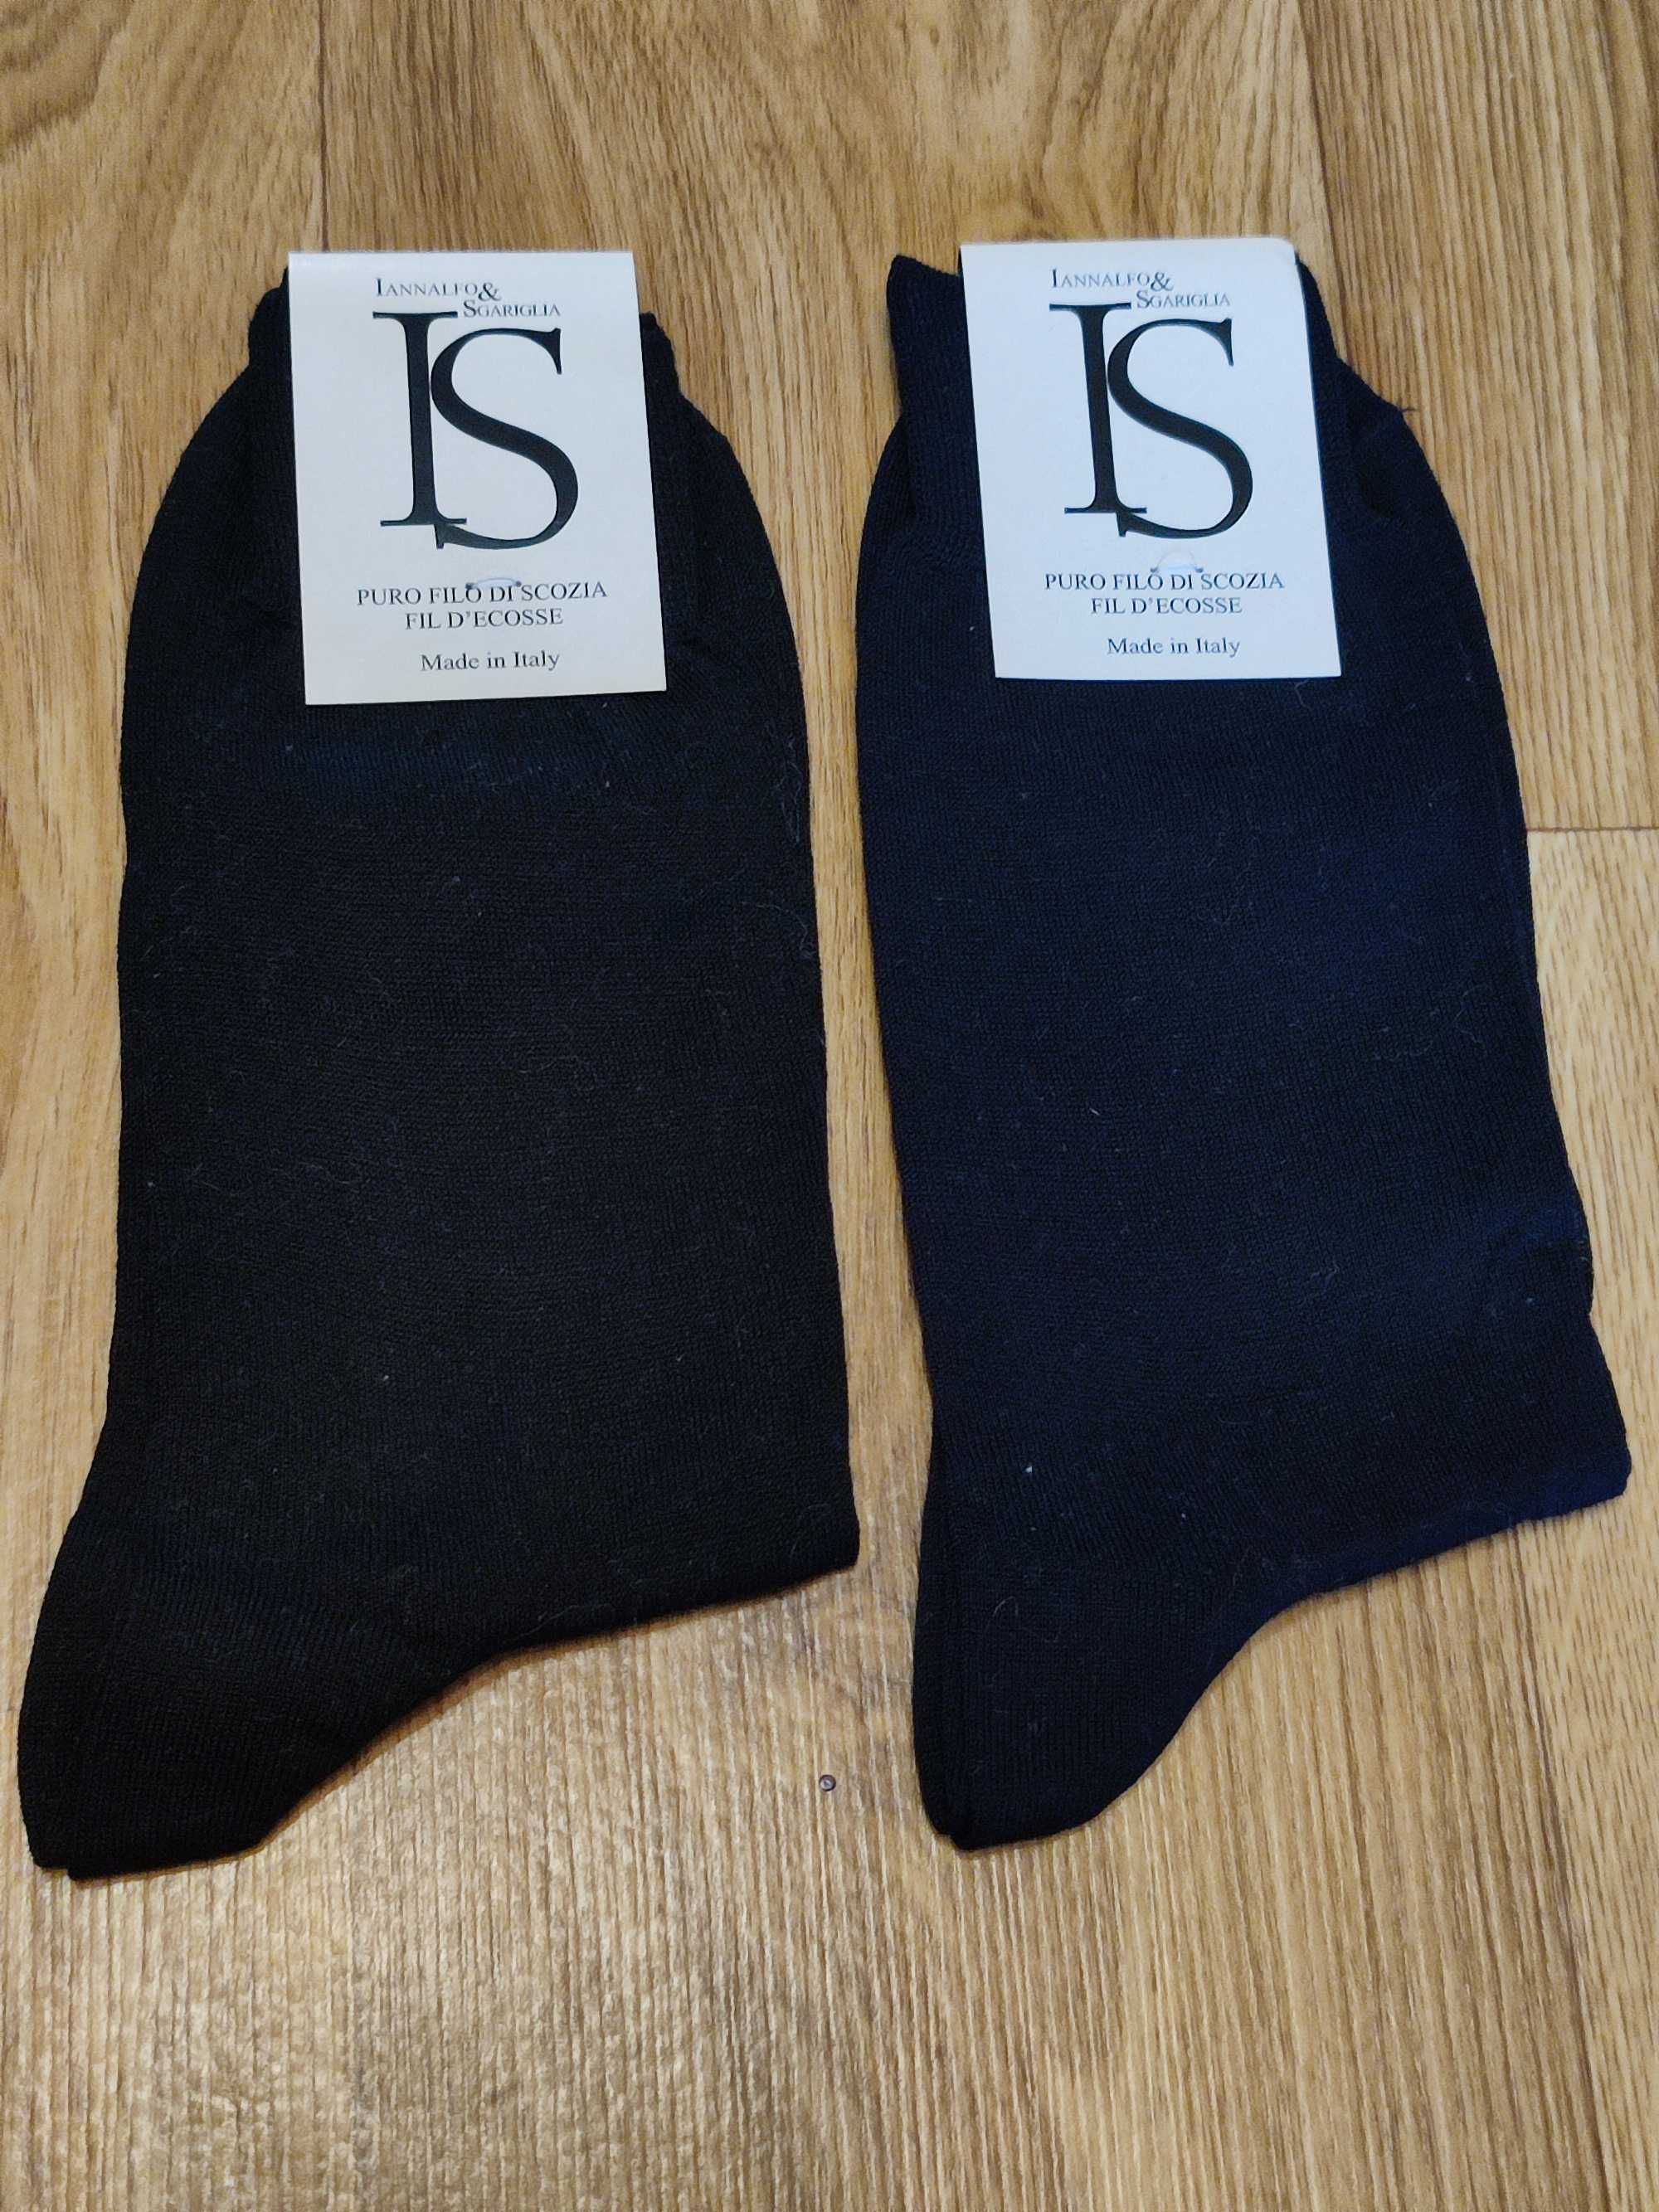 Шкарпетки lannalfo & sgariglia Італія нові